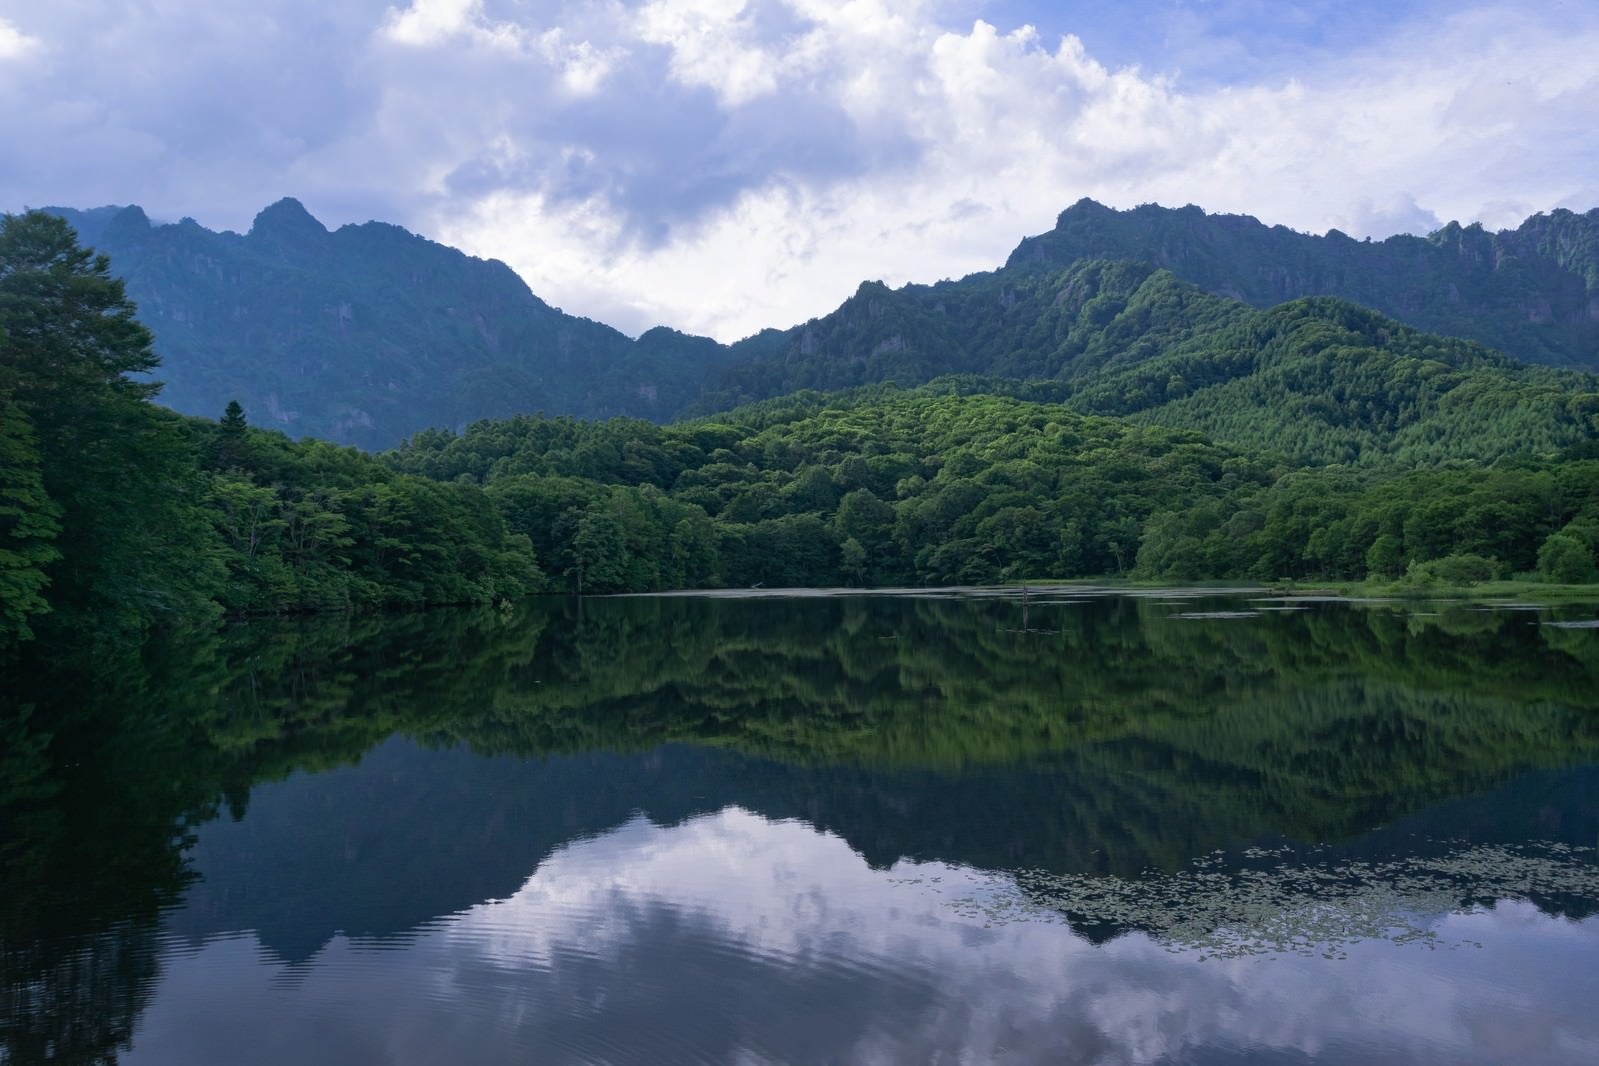 「緑豊かな木々と険しい神話の山を映す夏の鏡池」の写真